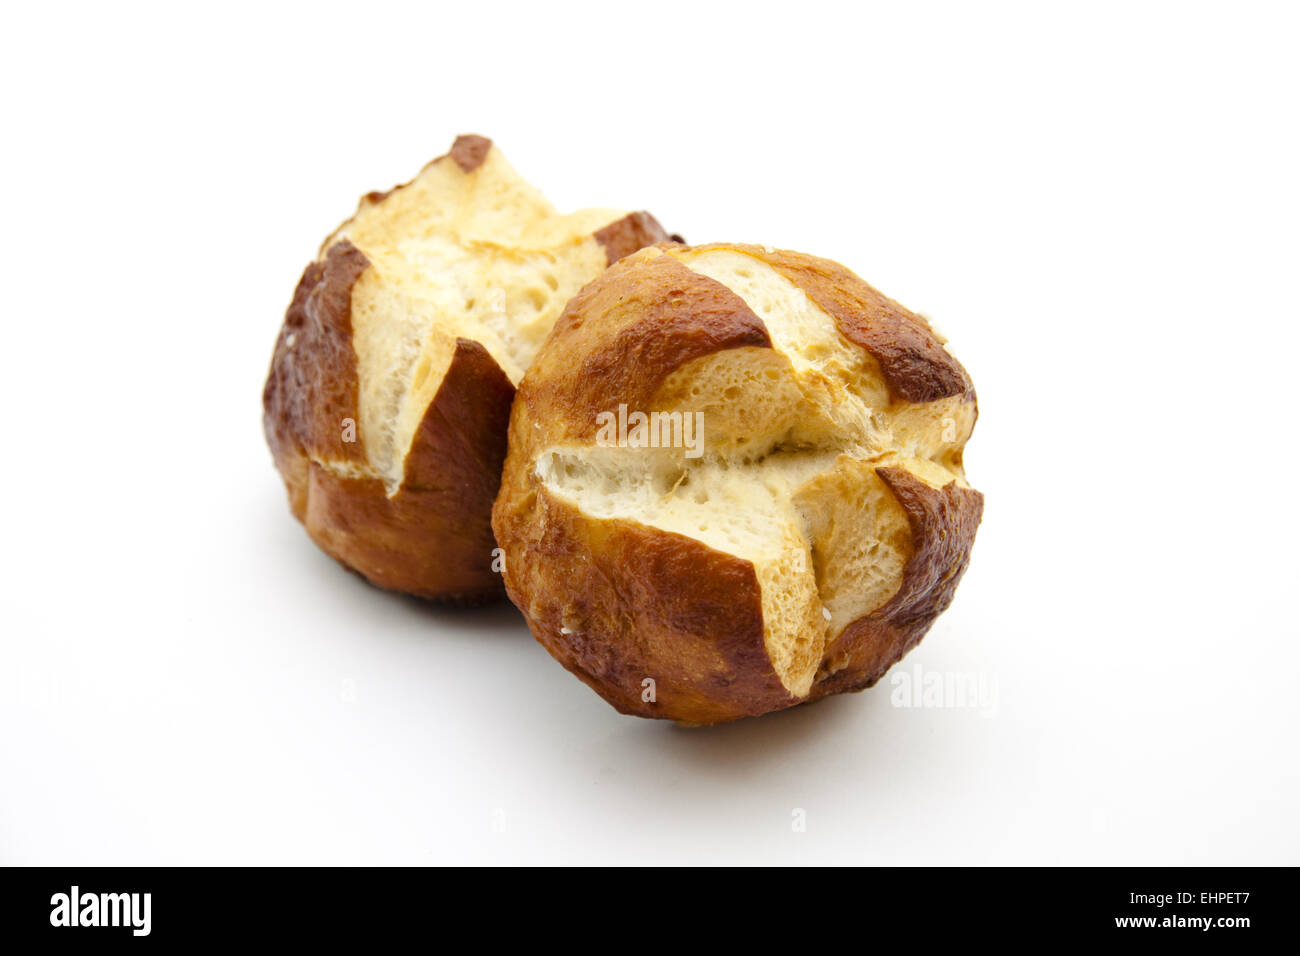 Lye bread rolls baked Stock Photo